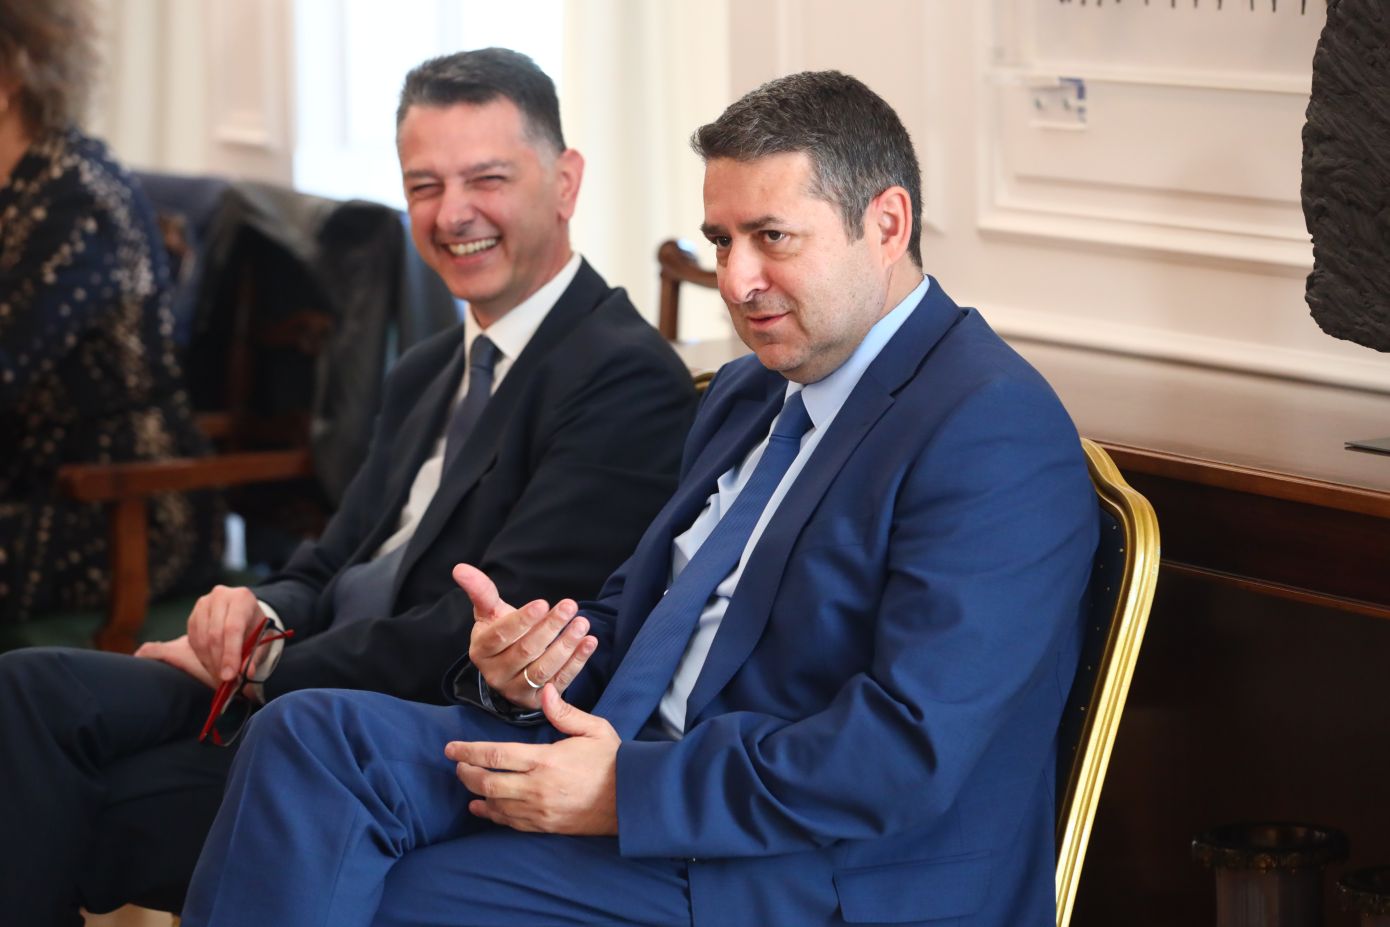 Γιώργος Μυλωνάκης: Ποιος είναι ο νέος υφυπουργός παρά τω Πρωθυπουργώ μετά τον ανασχηματισμό